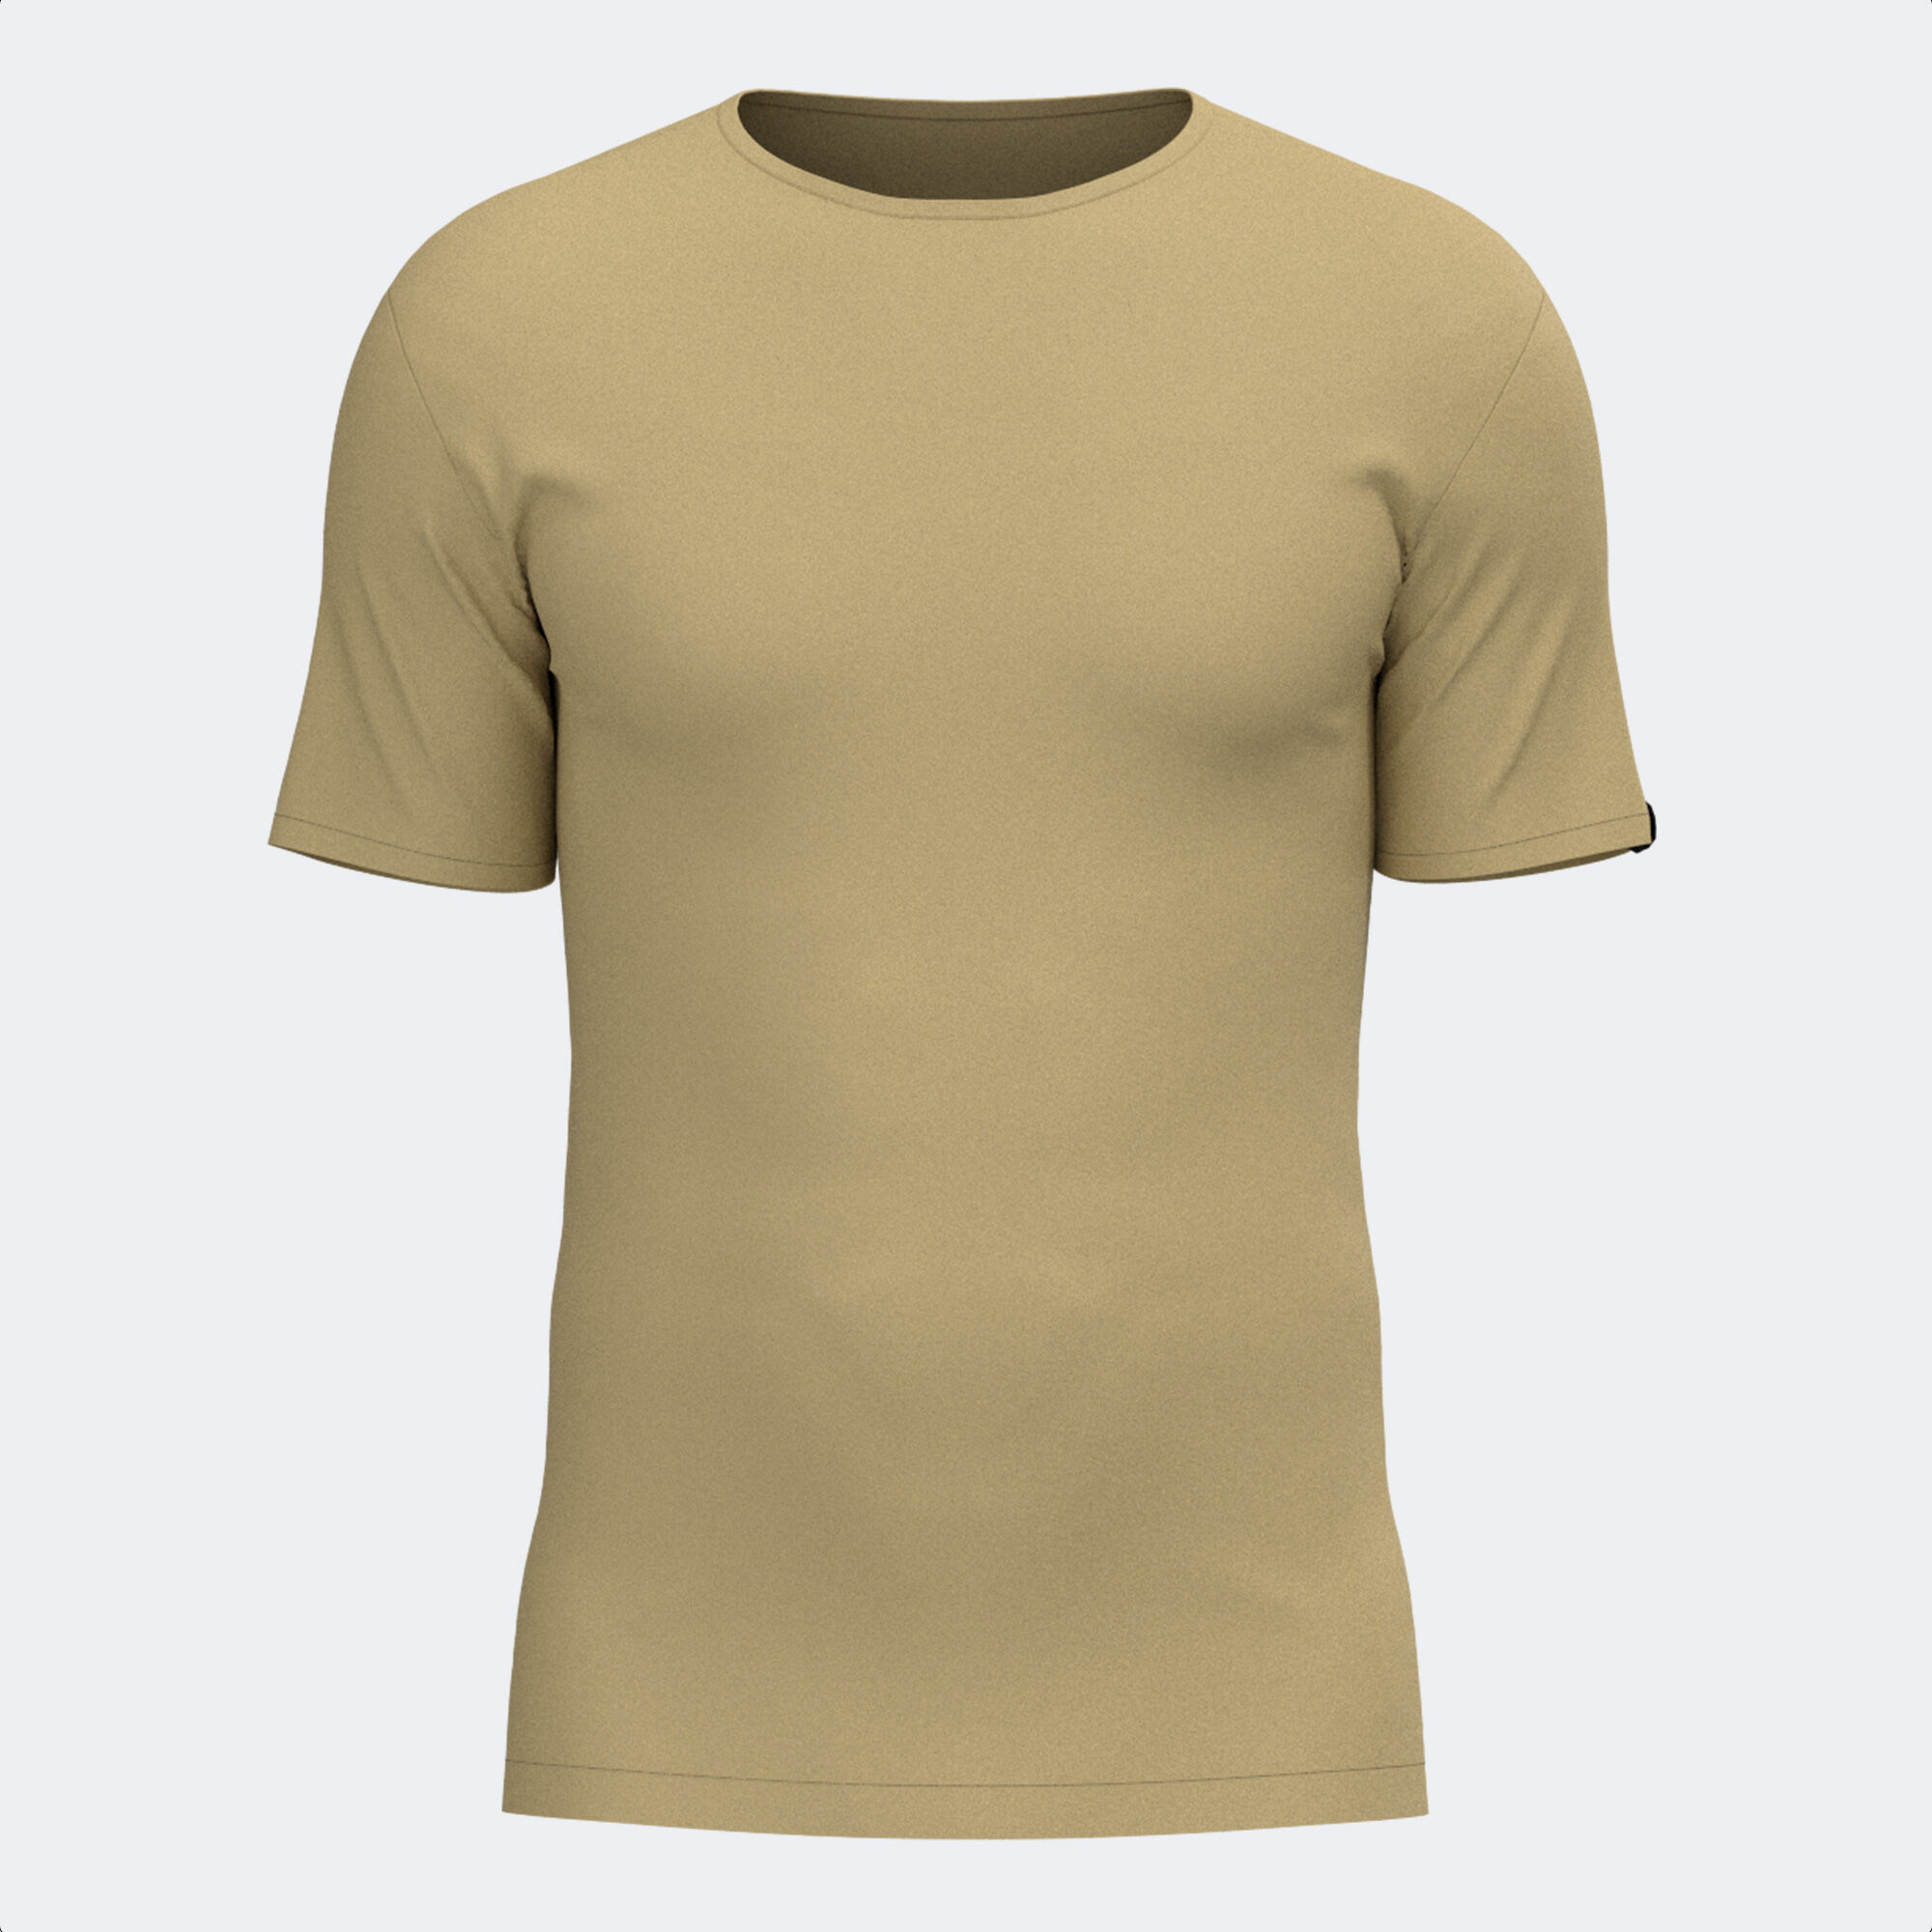 Shirt short sleeve man Desert beige